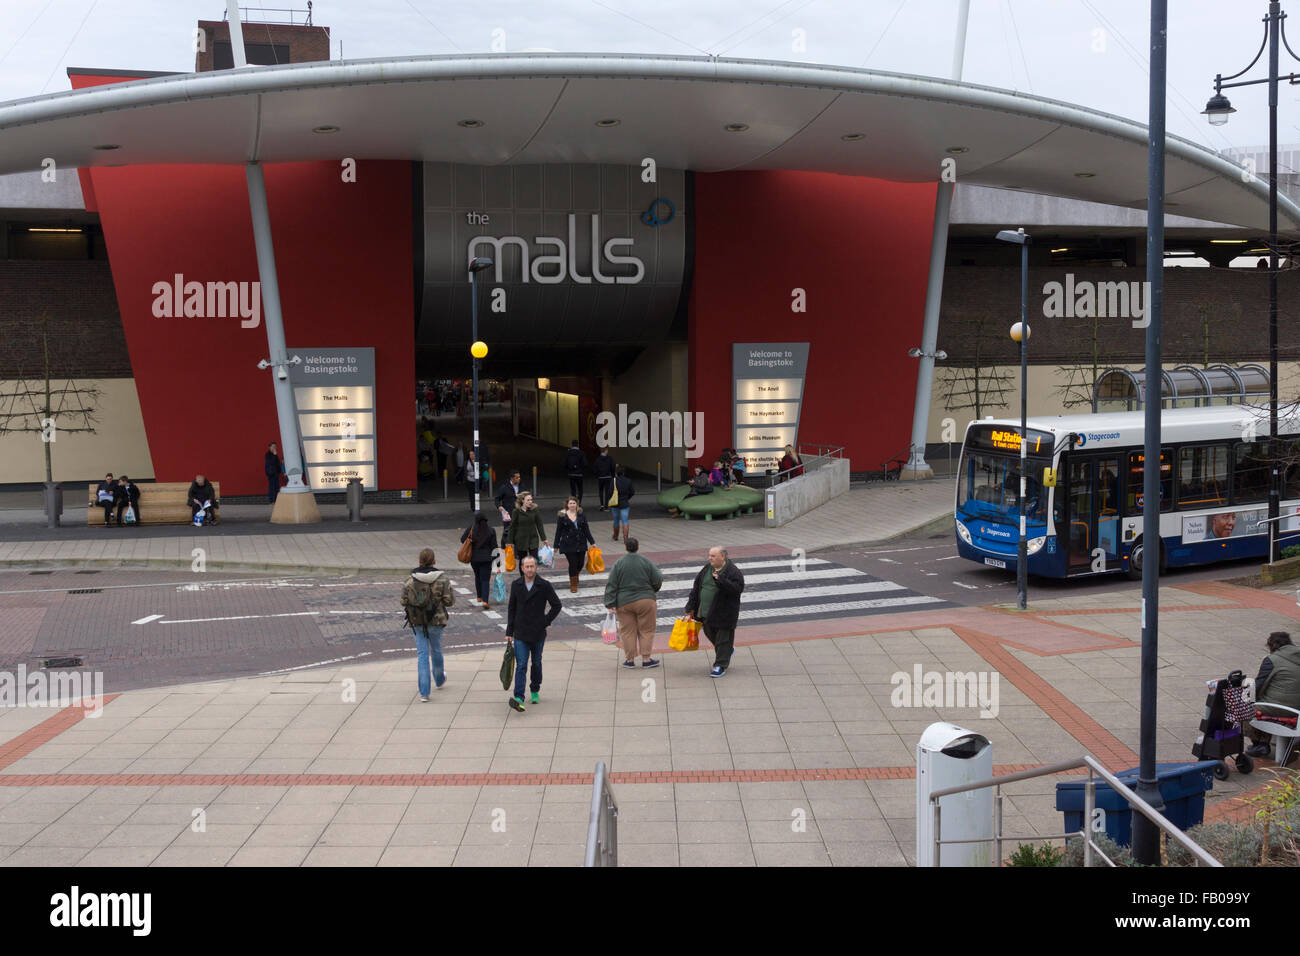 "I centri commerciali' in Basingstoke come vista dall'esterno della stazione ferroviaria Foto Stock